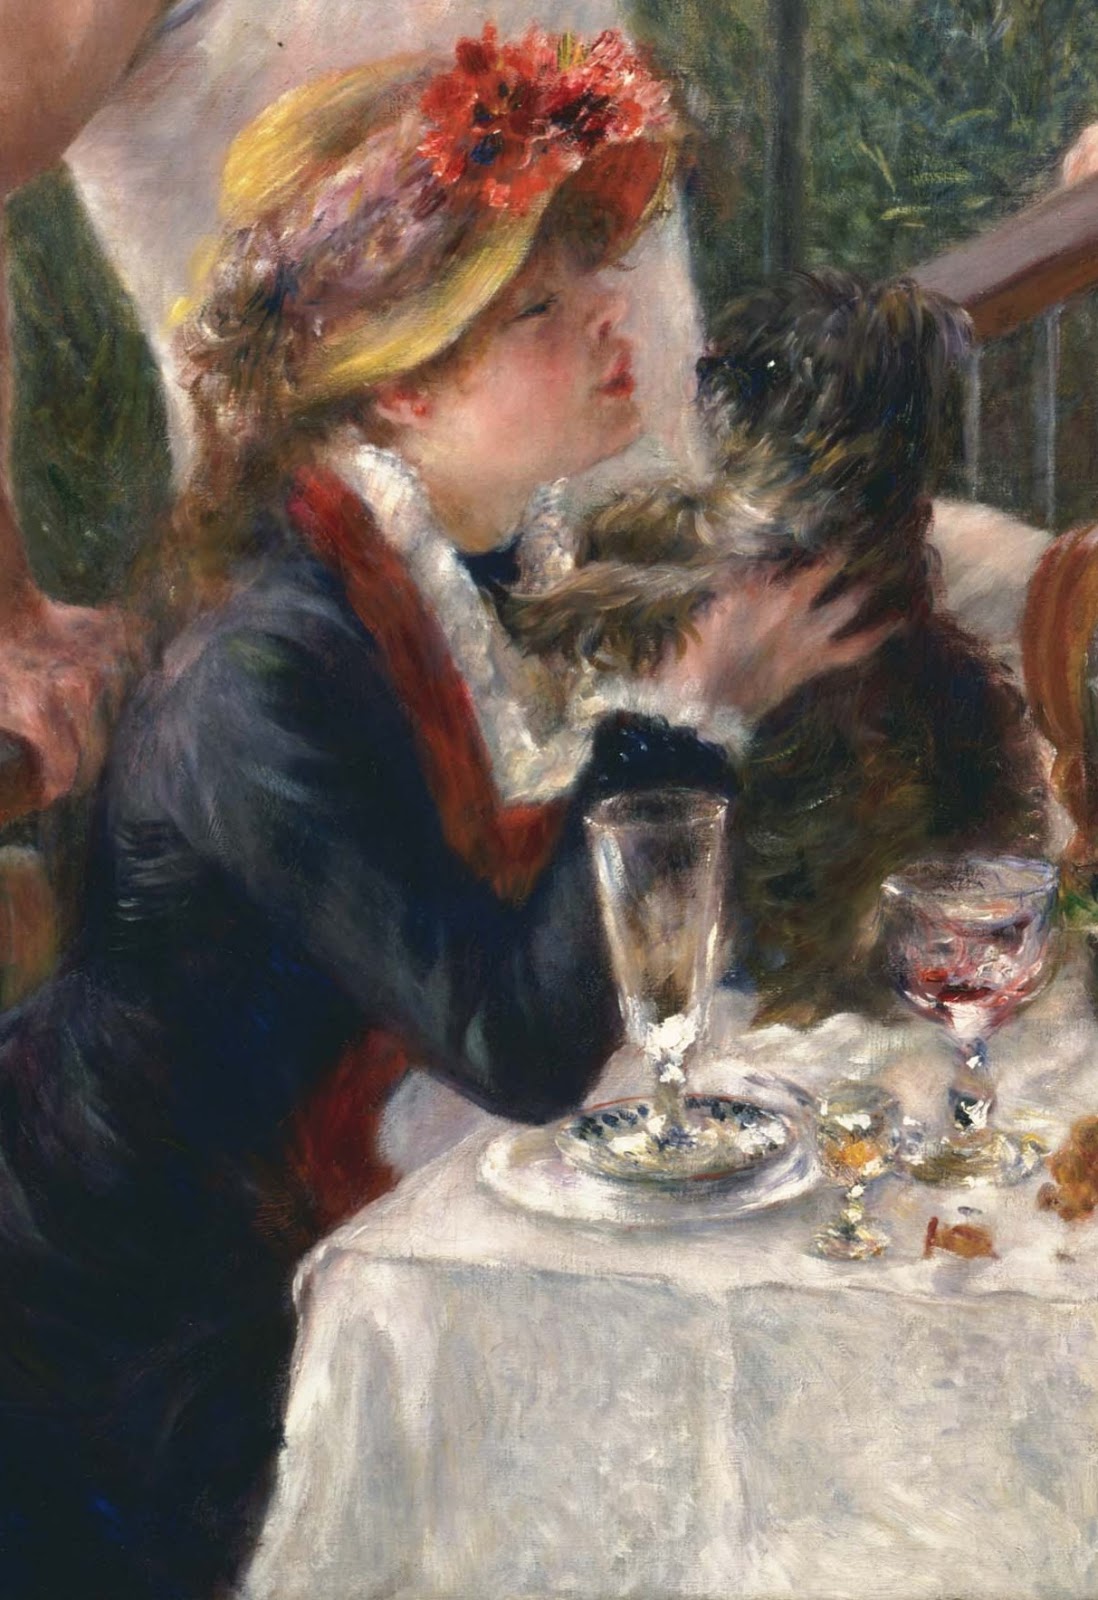 Pierre+Auguste+Renoir-1841-1-19 (561).jpg